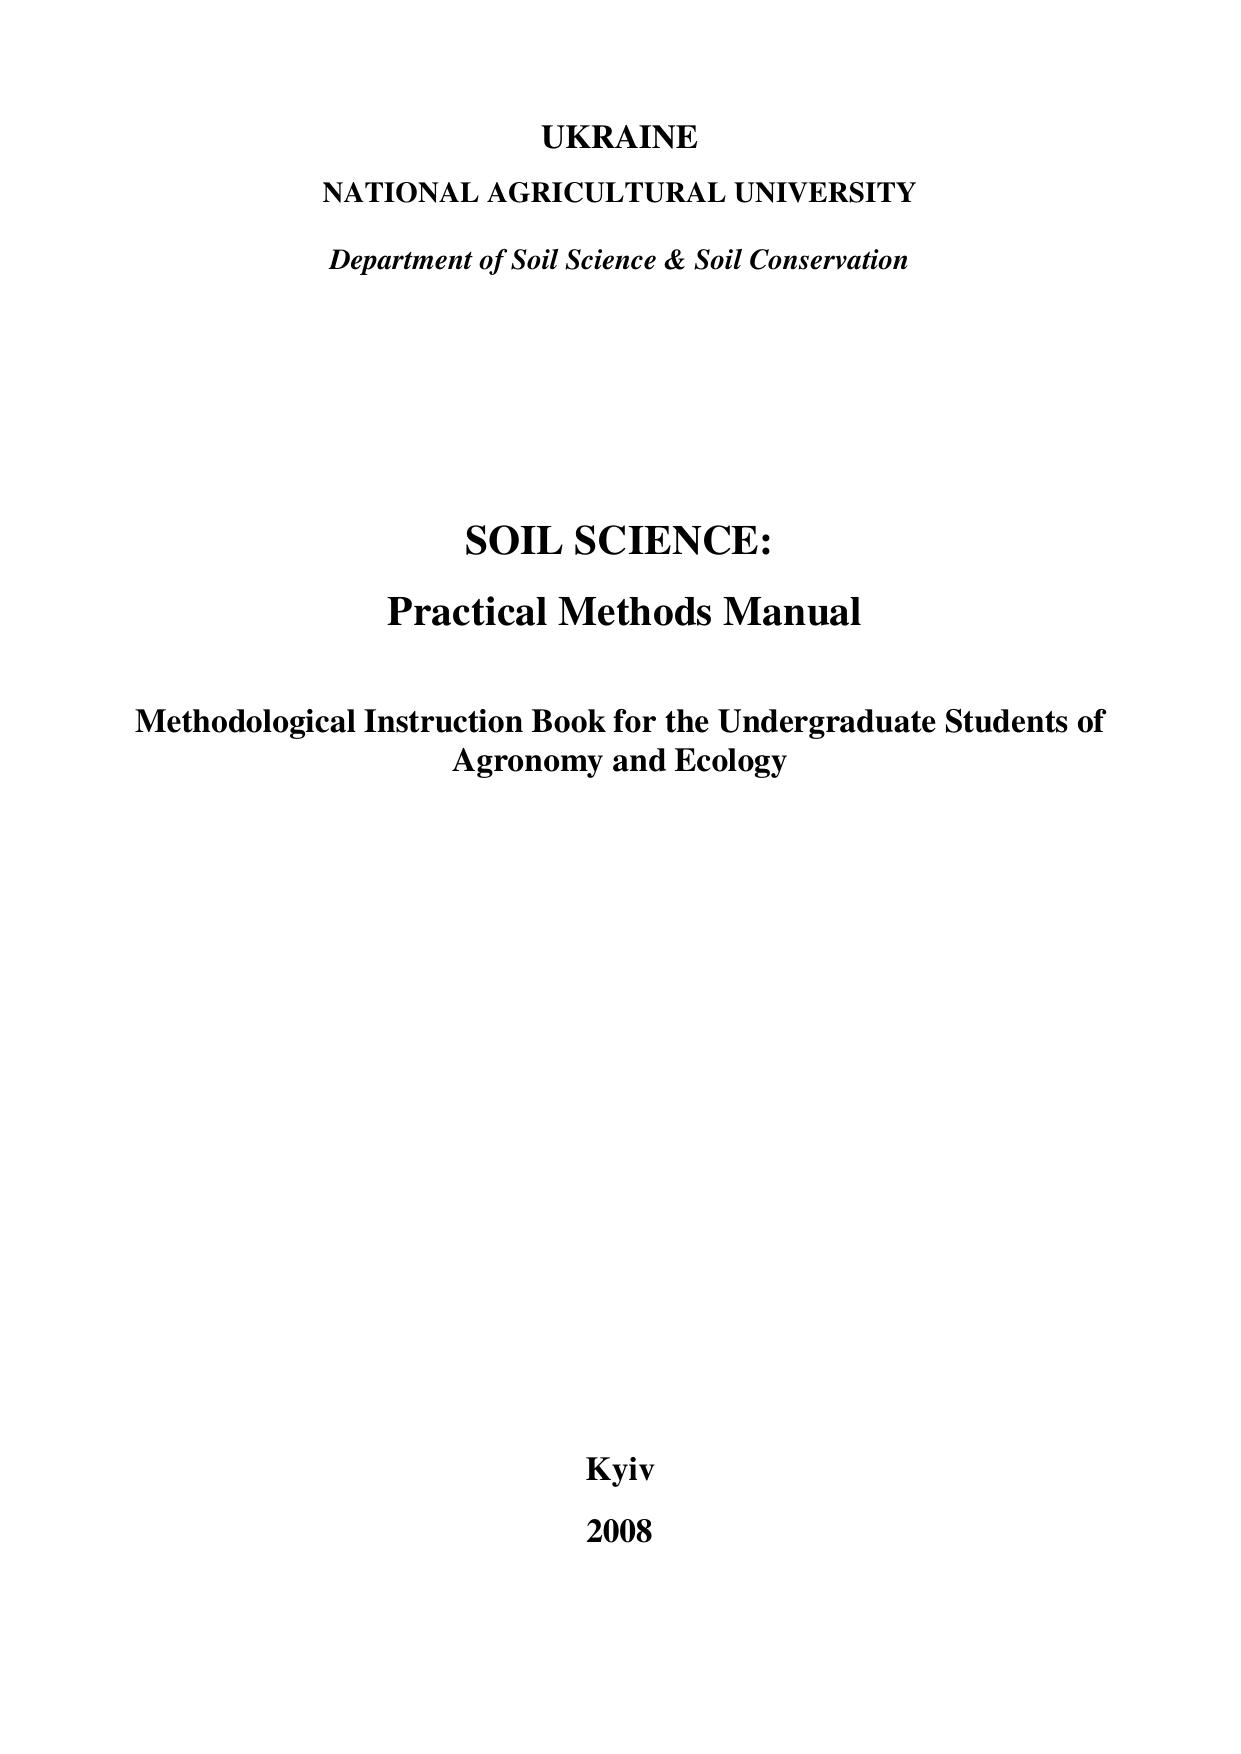 soil-science-practical-handbook 2008